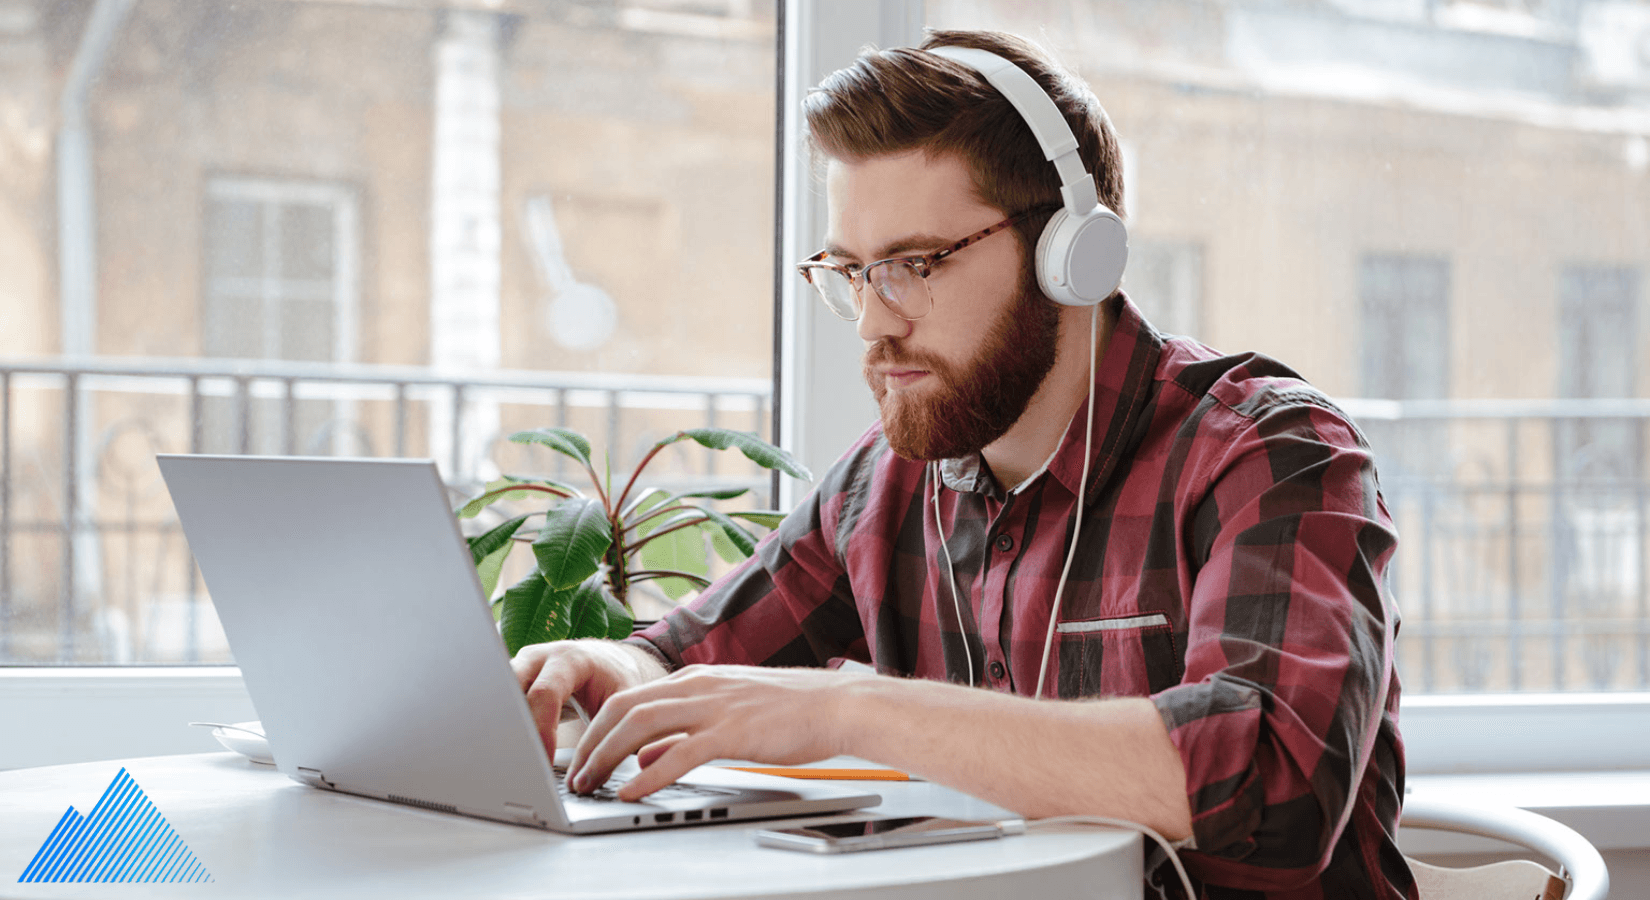 Man wearing headphones using a laptop